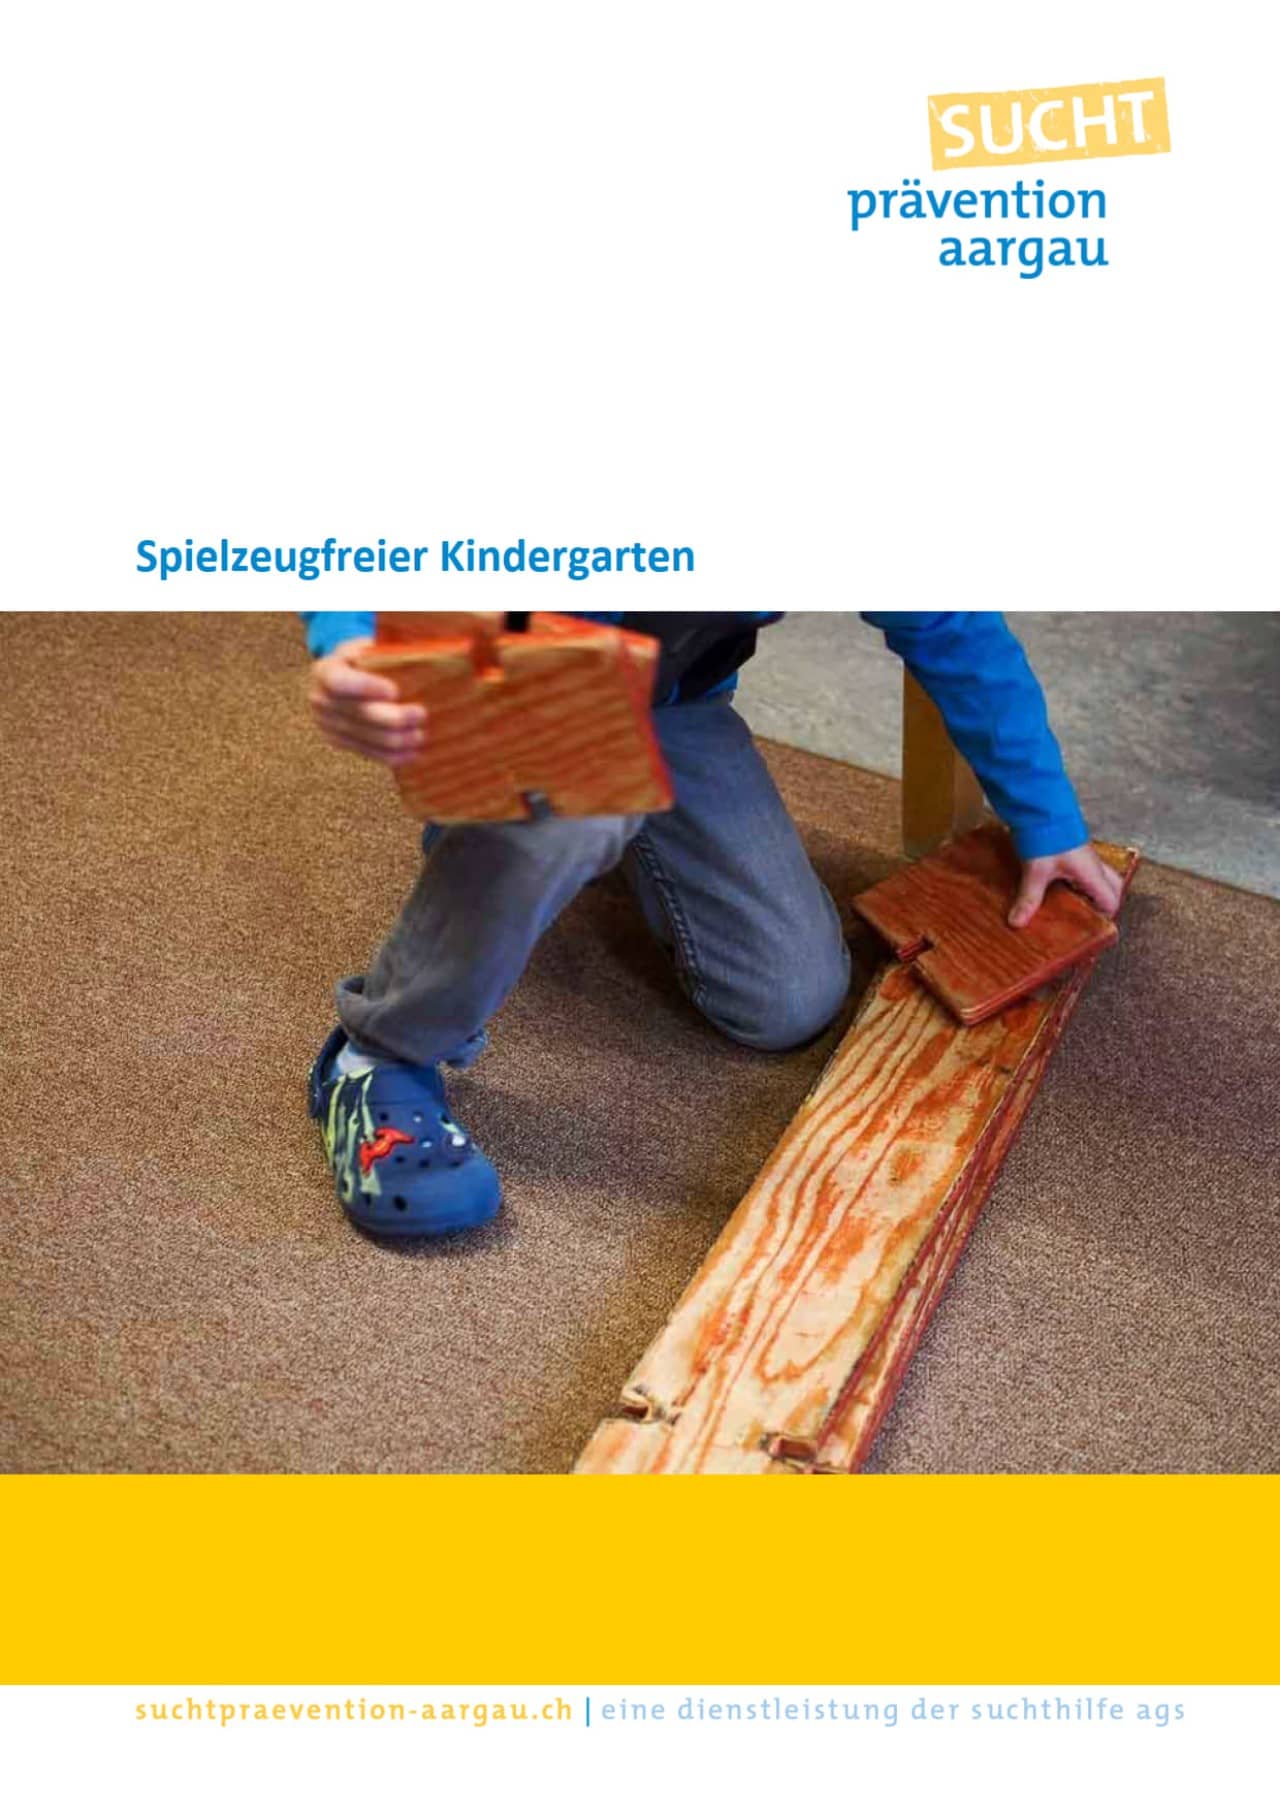 Titelseite einer Broschüre zum spielzeugfreien Kindergarten. Auf dem Bild sieht man ein ein Kind, das mit Holz spielt. 